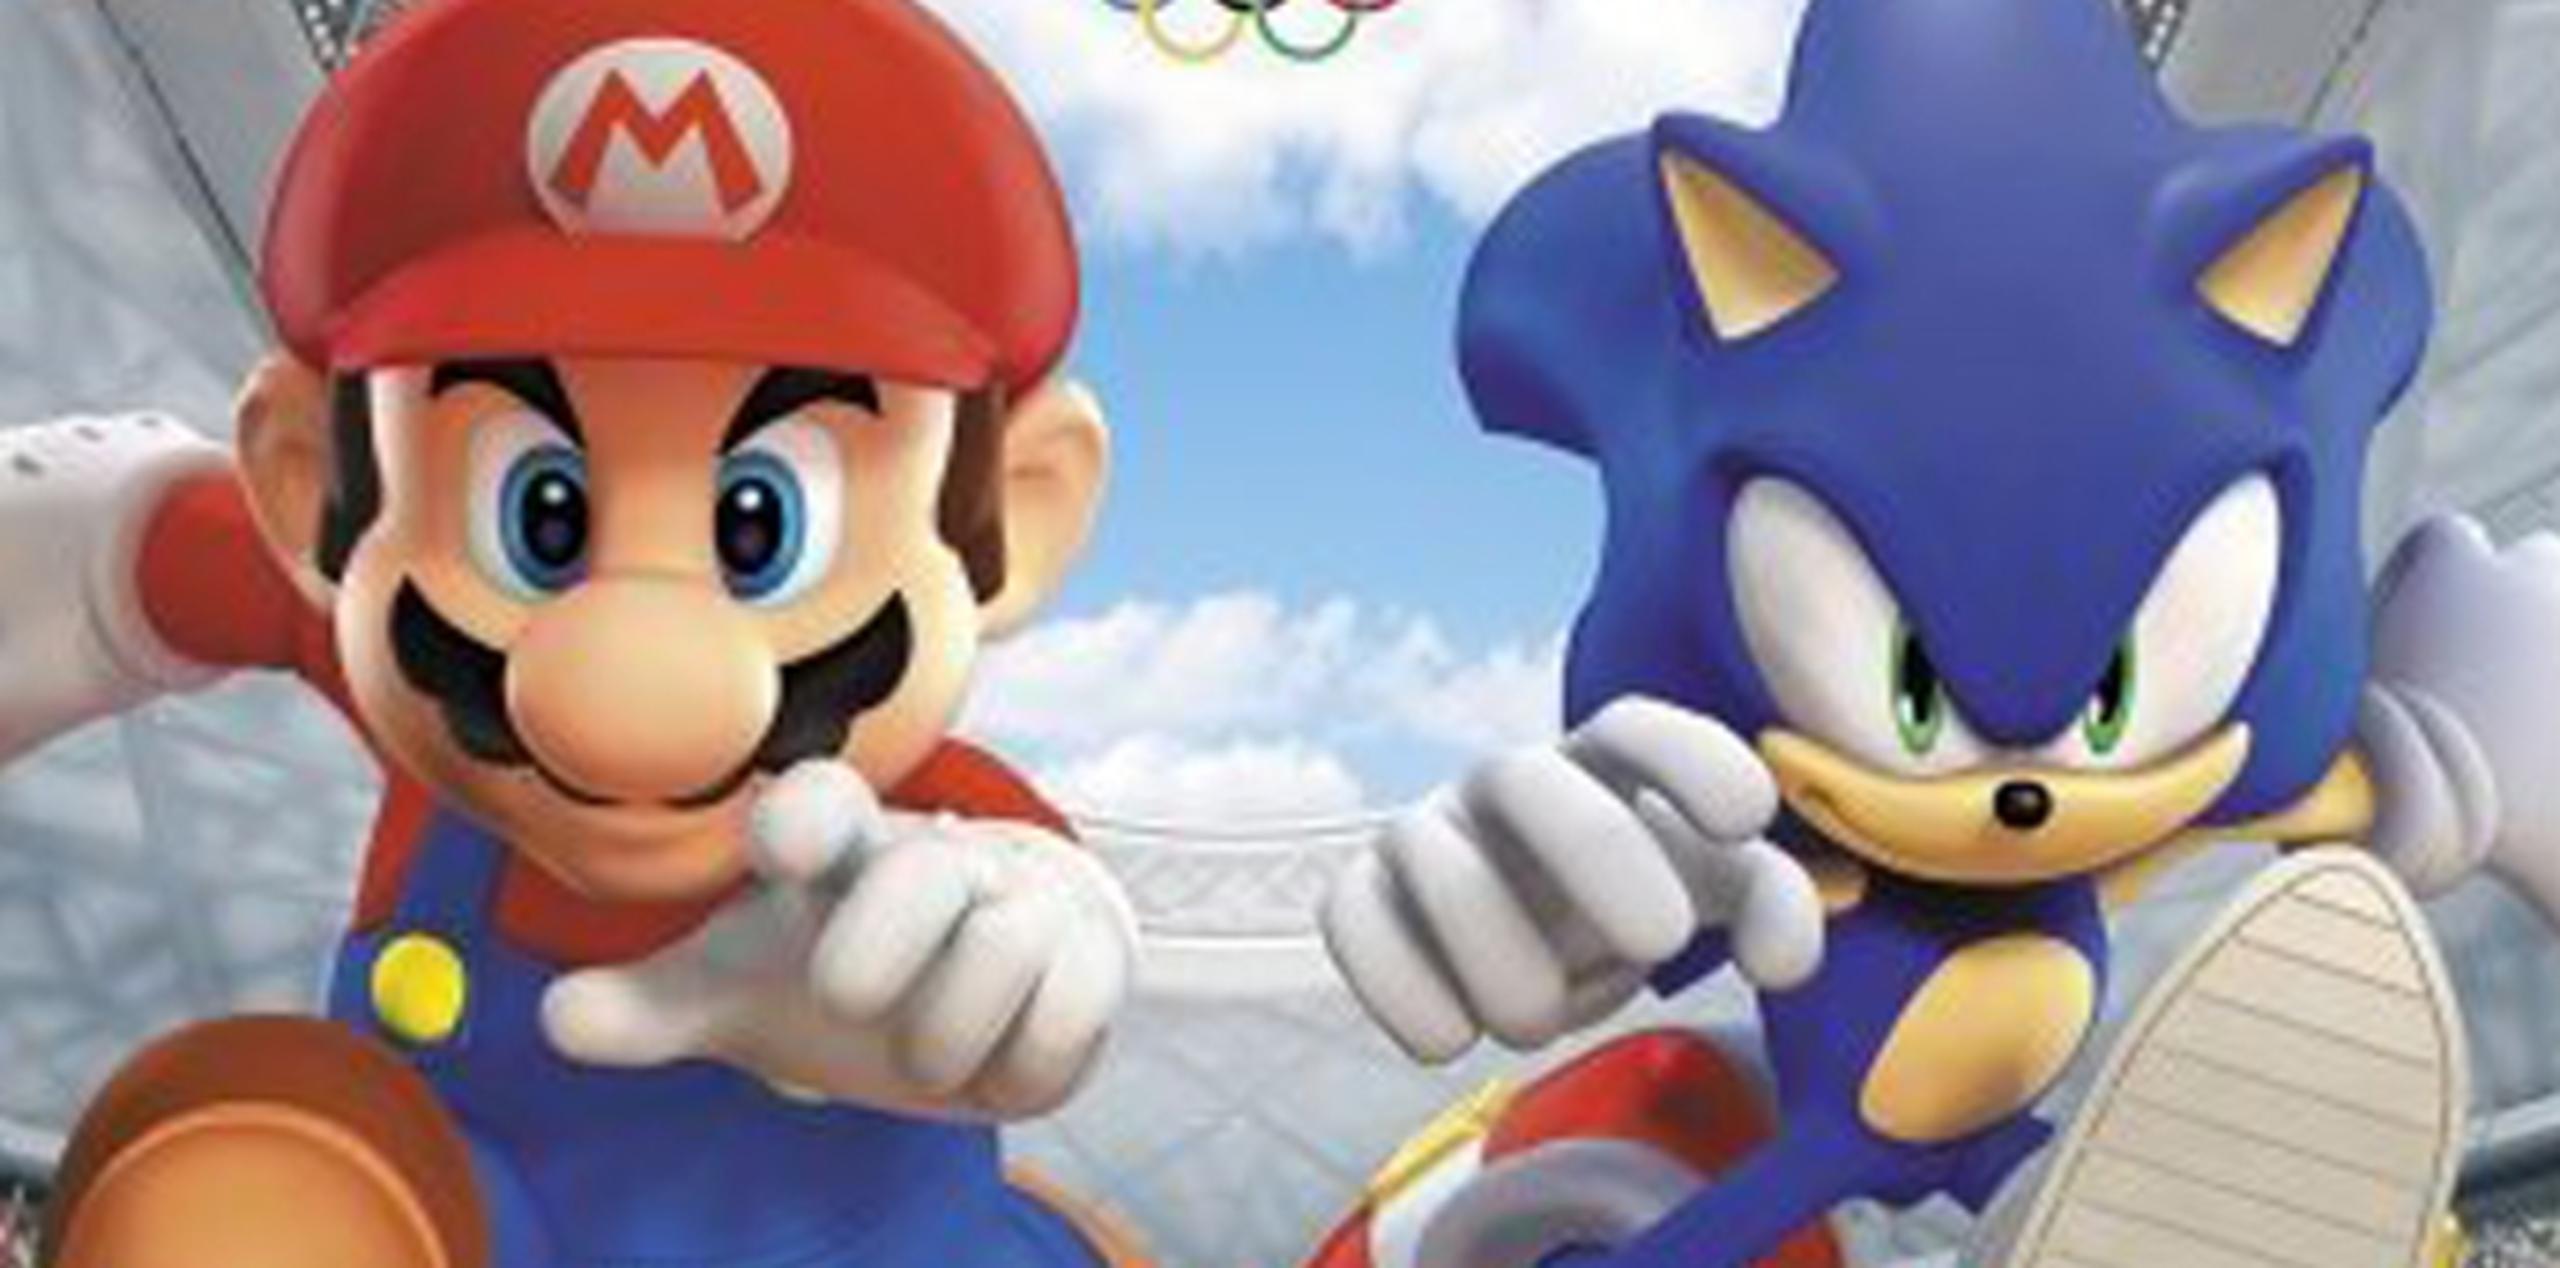 El videojuego Mario & Sonic at the Sochi 2014 Olympic Winter Games será lanzado solo para el Wii U. (Archivo)